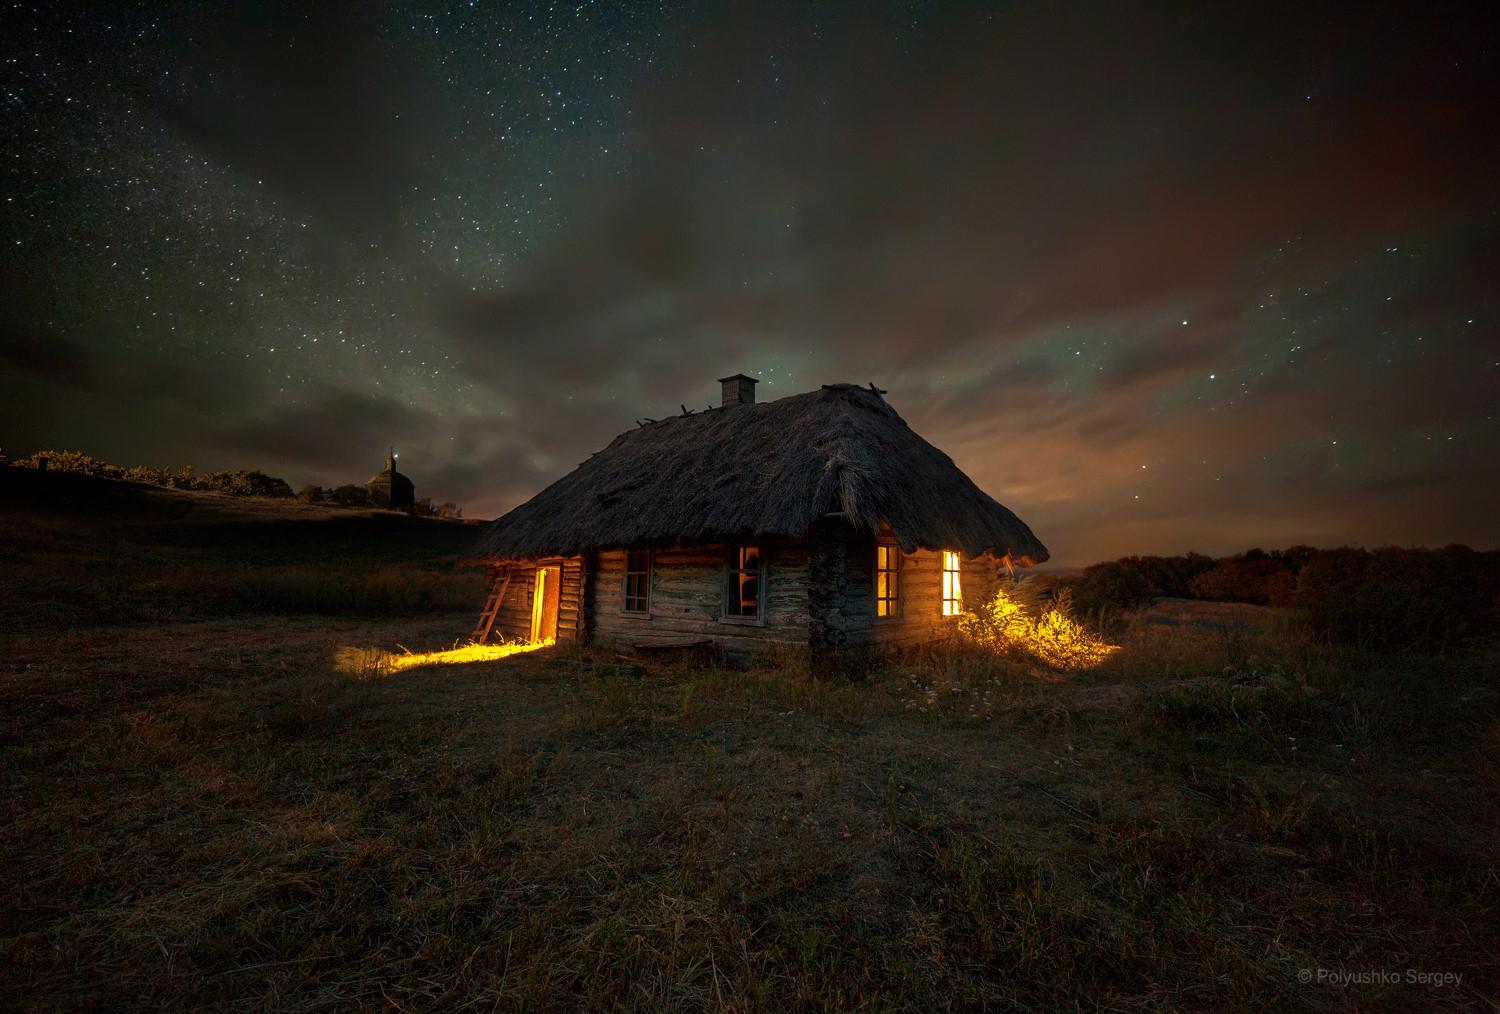 Деревенская хата. Деревенский дом ночью. Домик в деревне ночью. Ночь в деревне. Украинские пейзажи деревни.